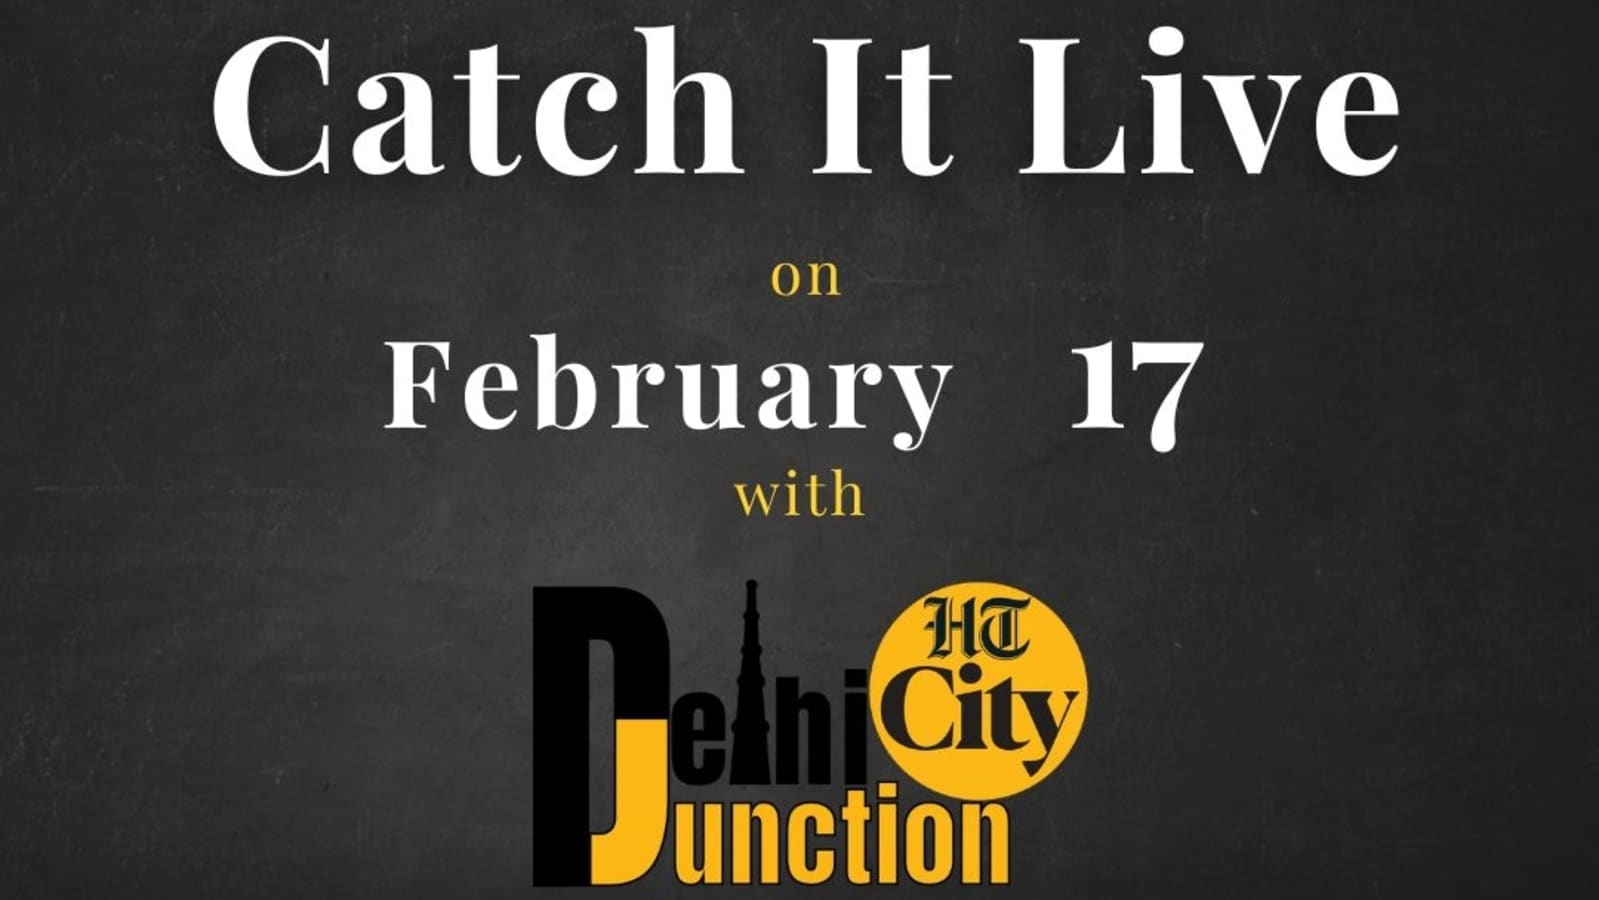 एचटी सिटी दिल्ली जंक्शन: 17 फरवरी को कैच इट लाइव